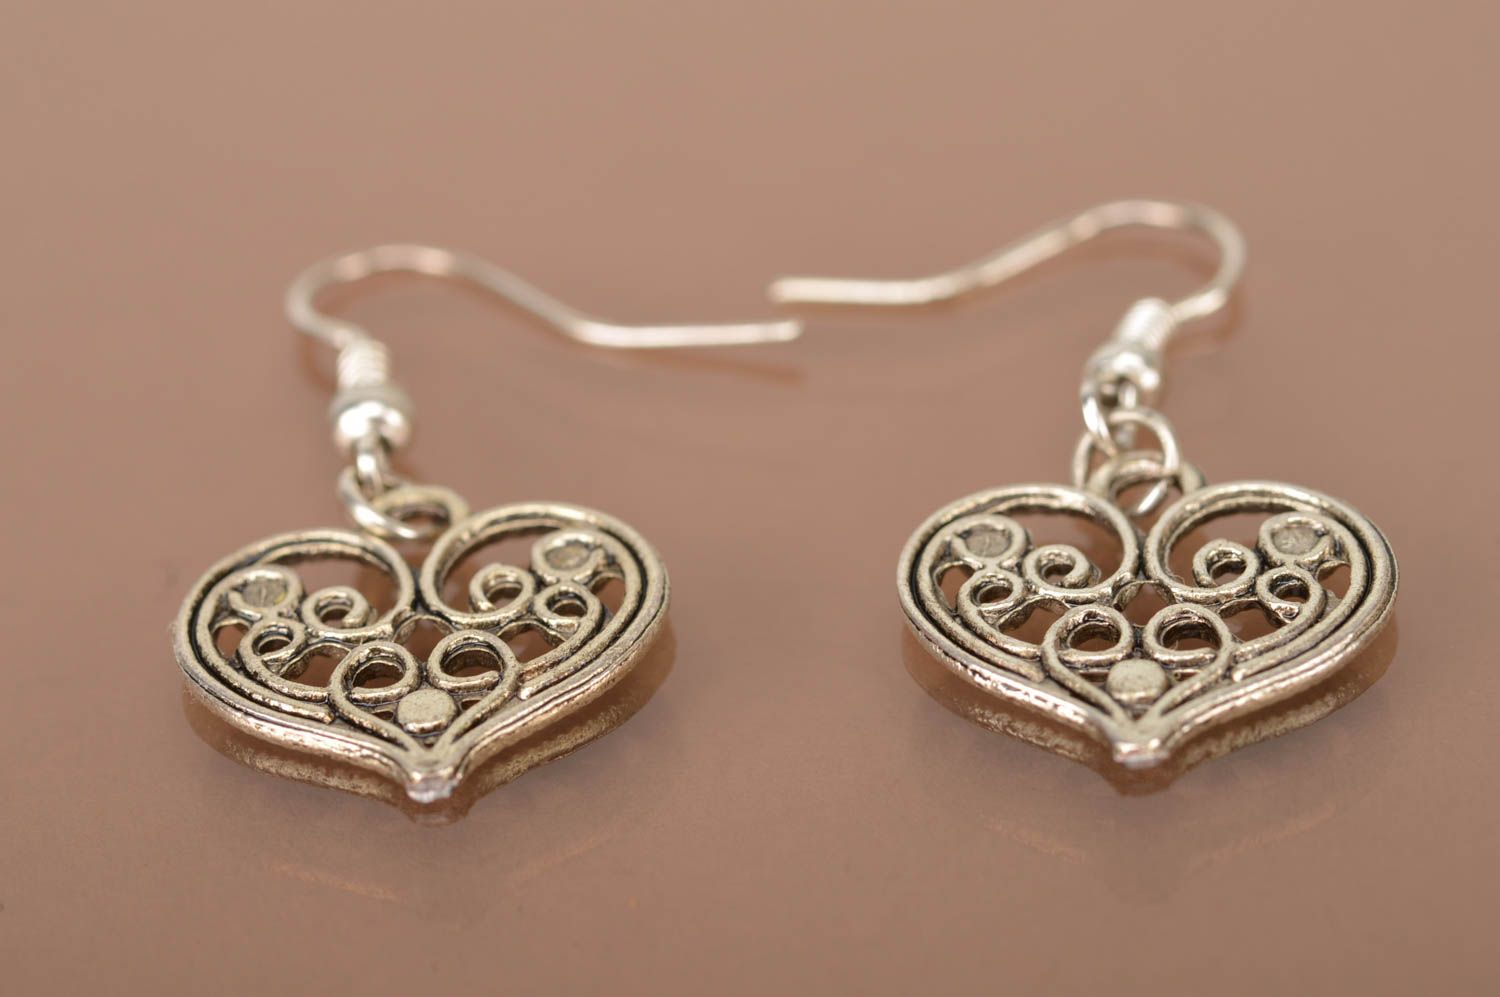 Unusual handmade metal earrings fashion earrings designs jewelry for women photo 5